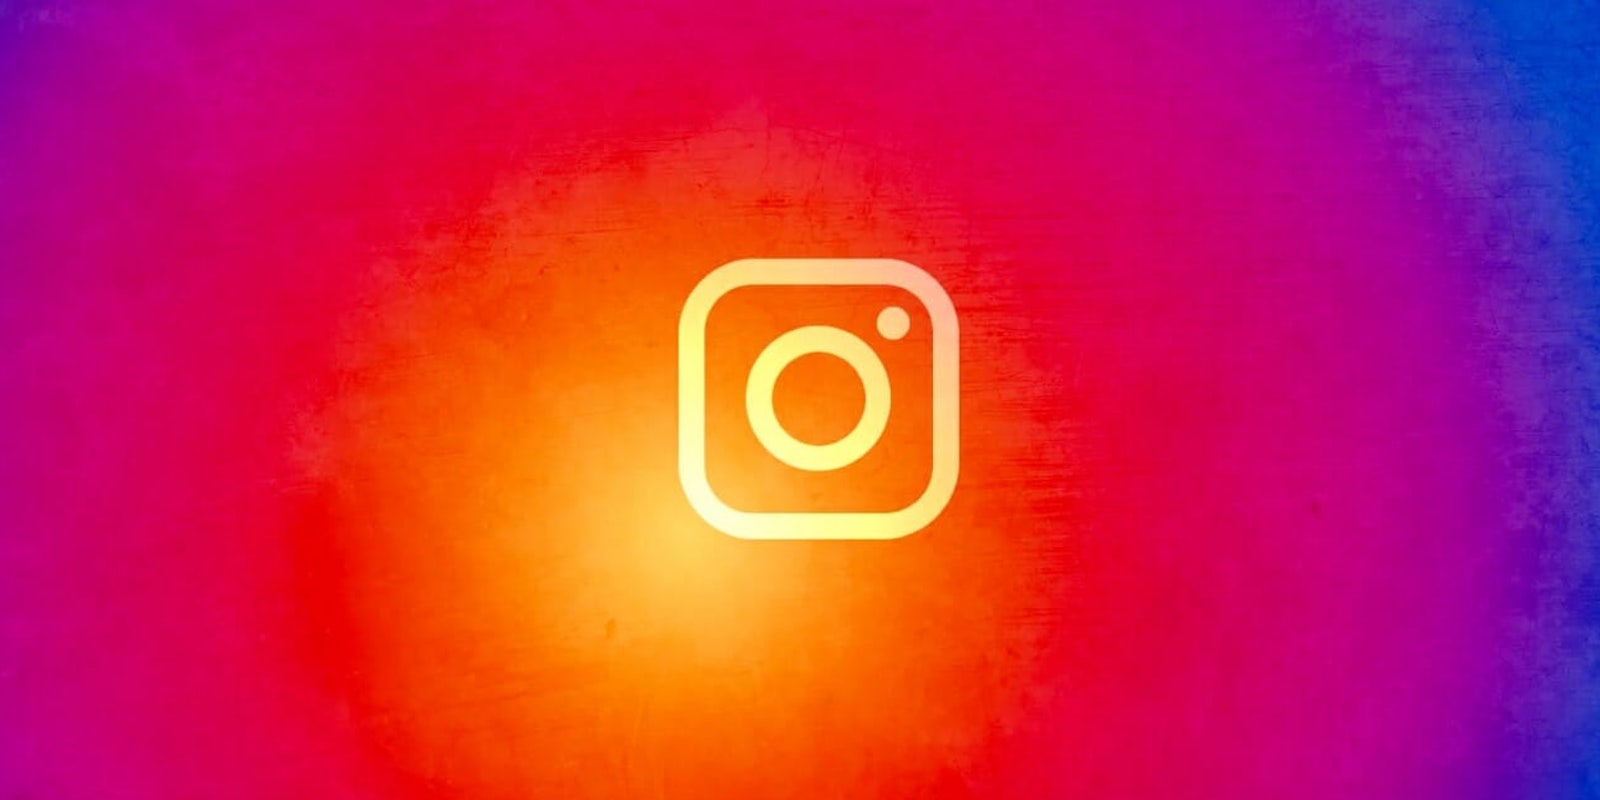 hidden instagram features: instagram tips and tricks